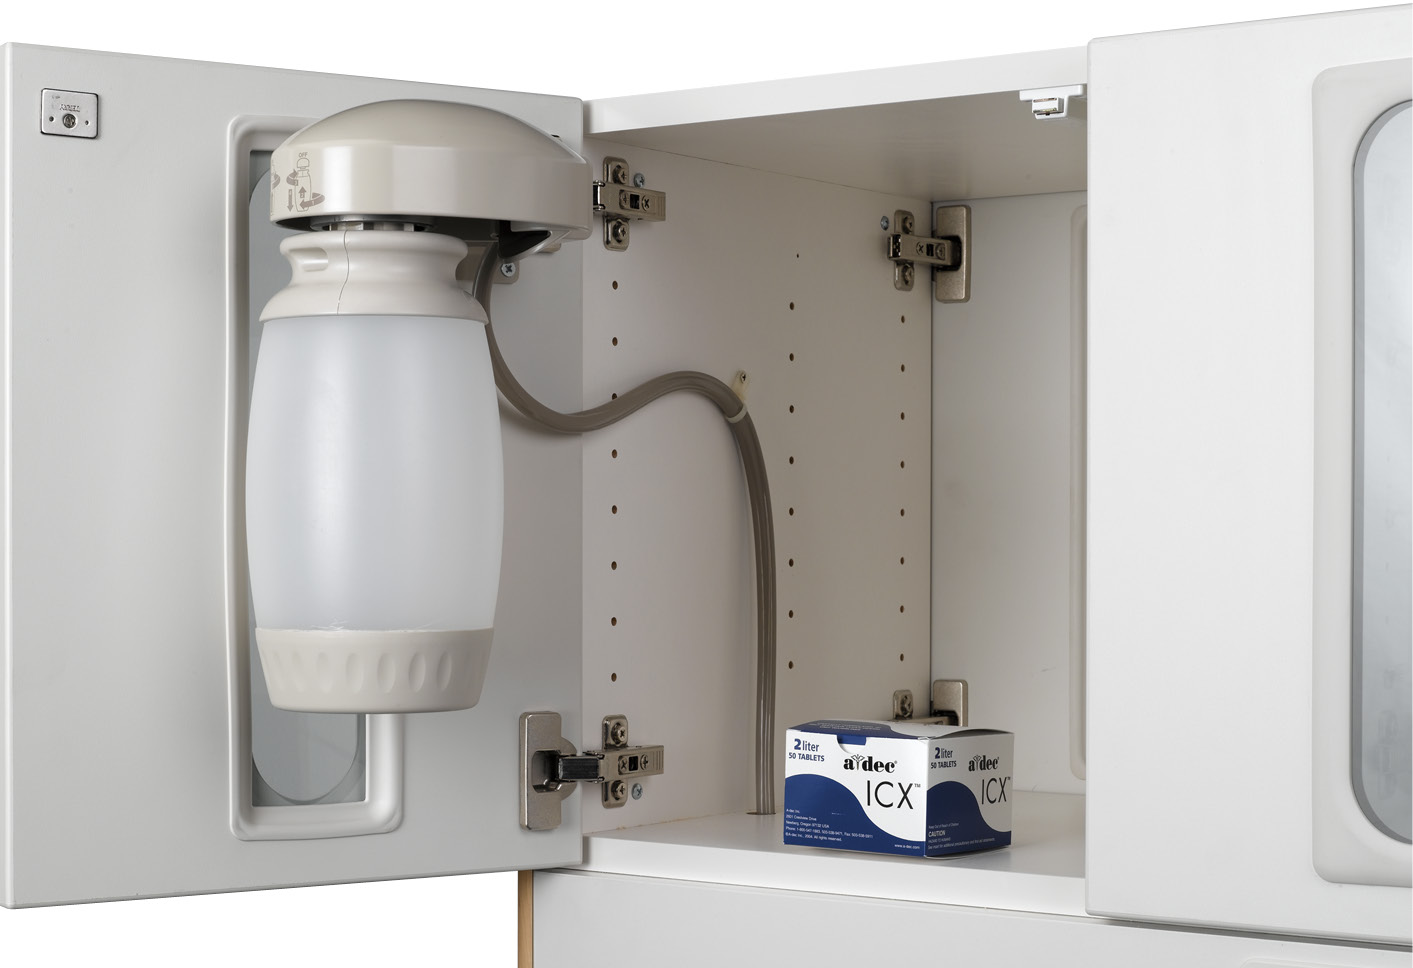 Συστήματα A-dec 500 12 O Clock - Οδηγίες χρήσης Αυτόνομο σύστημα νερού Το αυτόνομο σύστημα νερού παρέχει νερό στα εργαλεία χειρός, τις σύριγγες και το ποτήρι του πτυελοδοχείου.